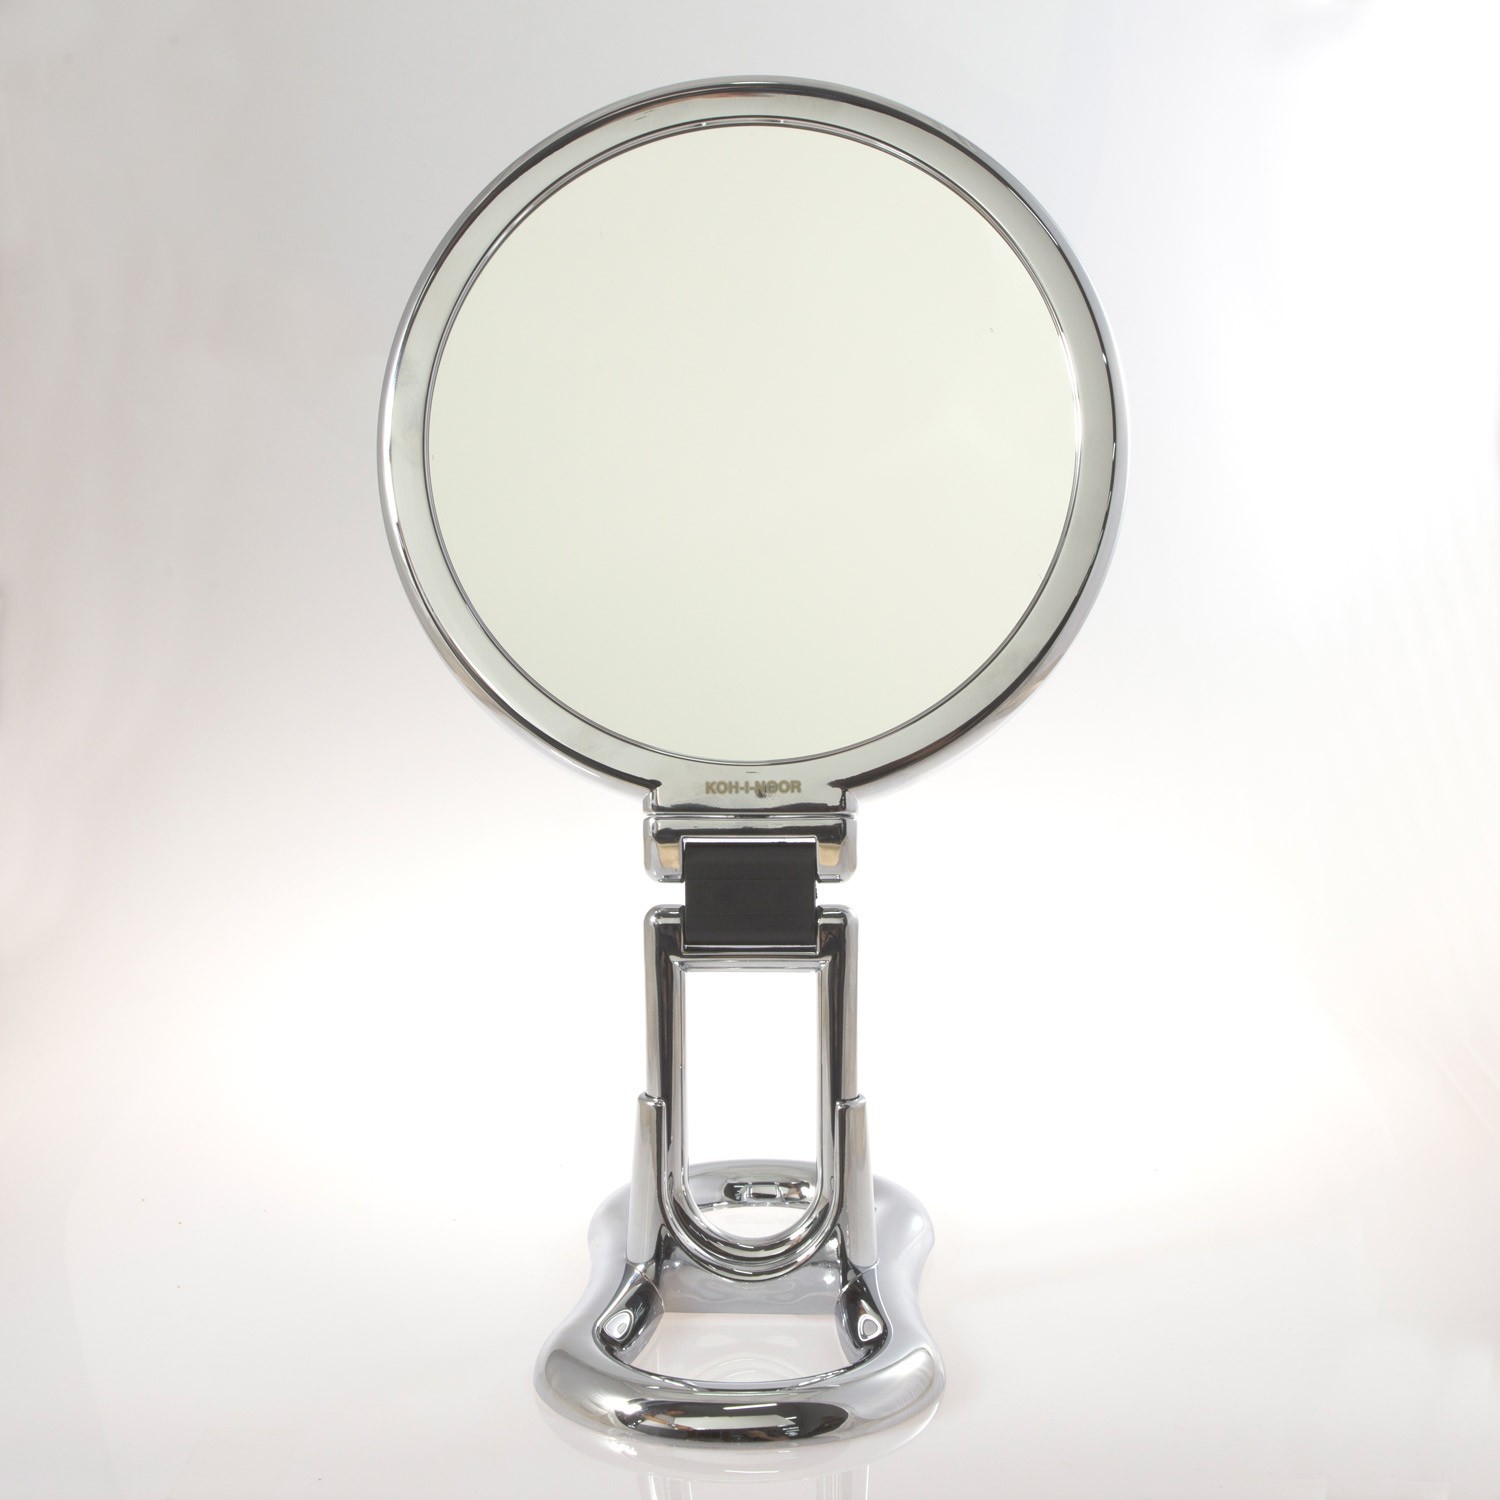 Specchio cromato bifacciale con ingrandimento x 6, manico pieghevole e  supporto da tavolo. Ø18cm.Cromo